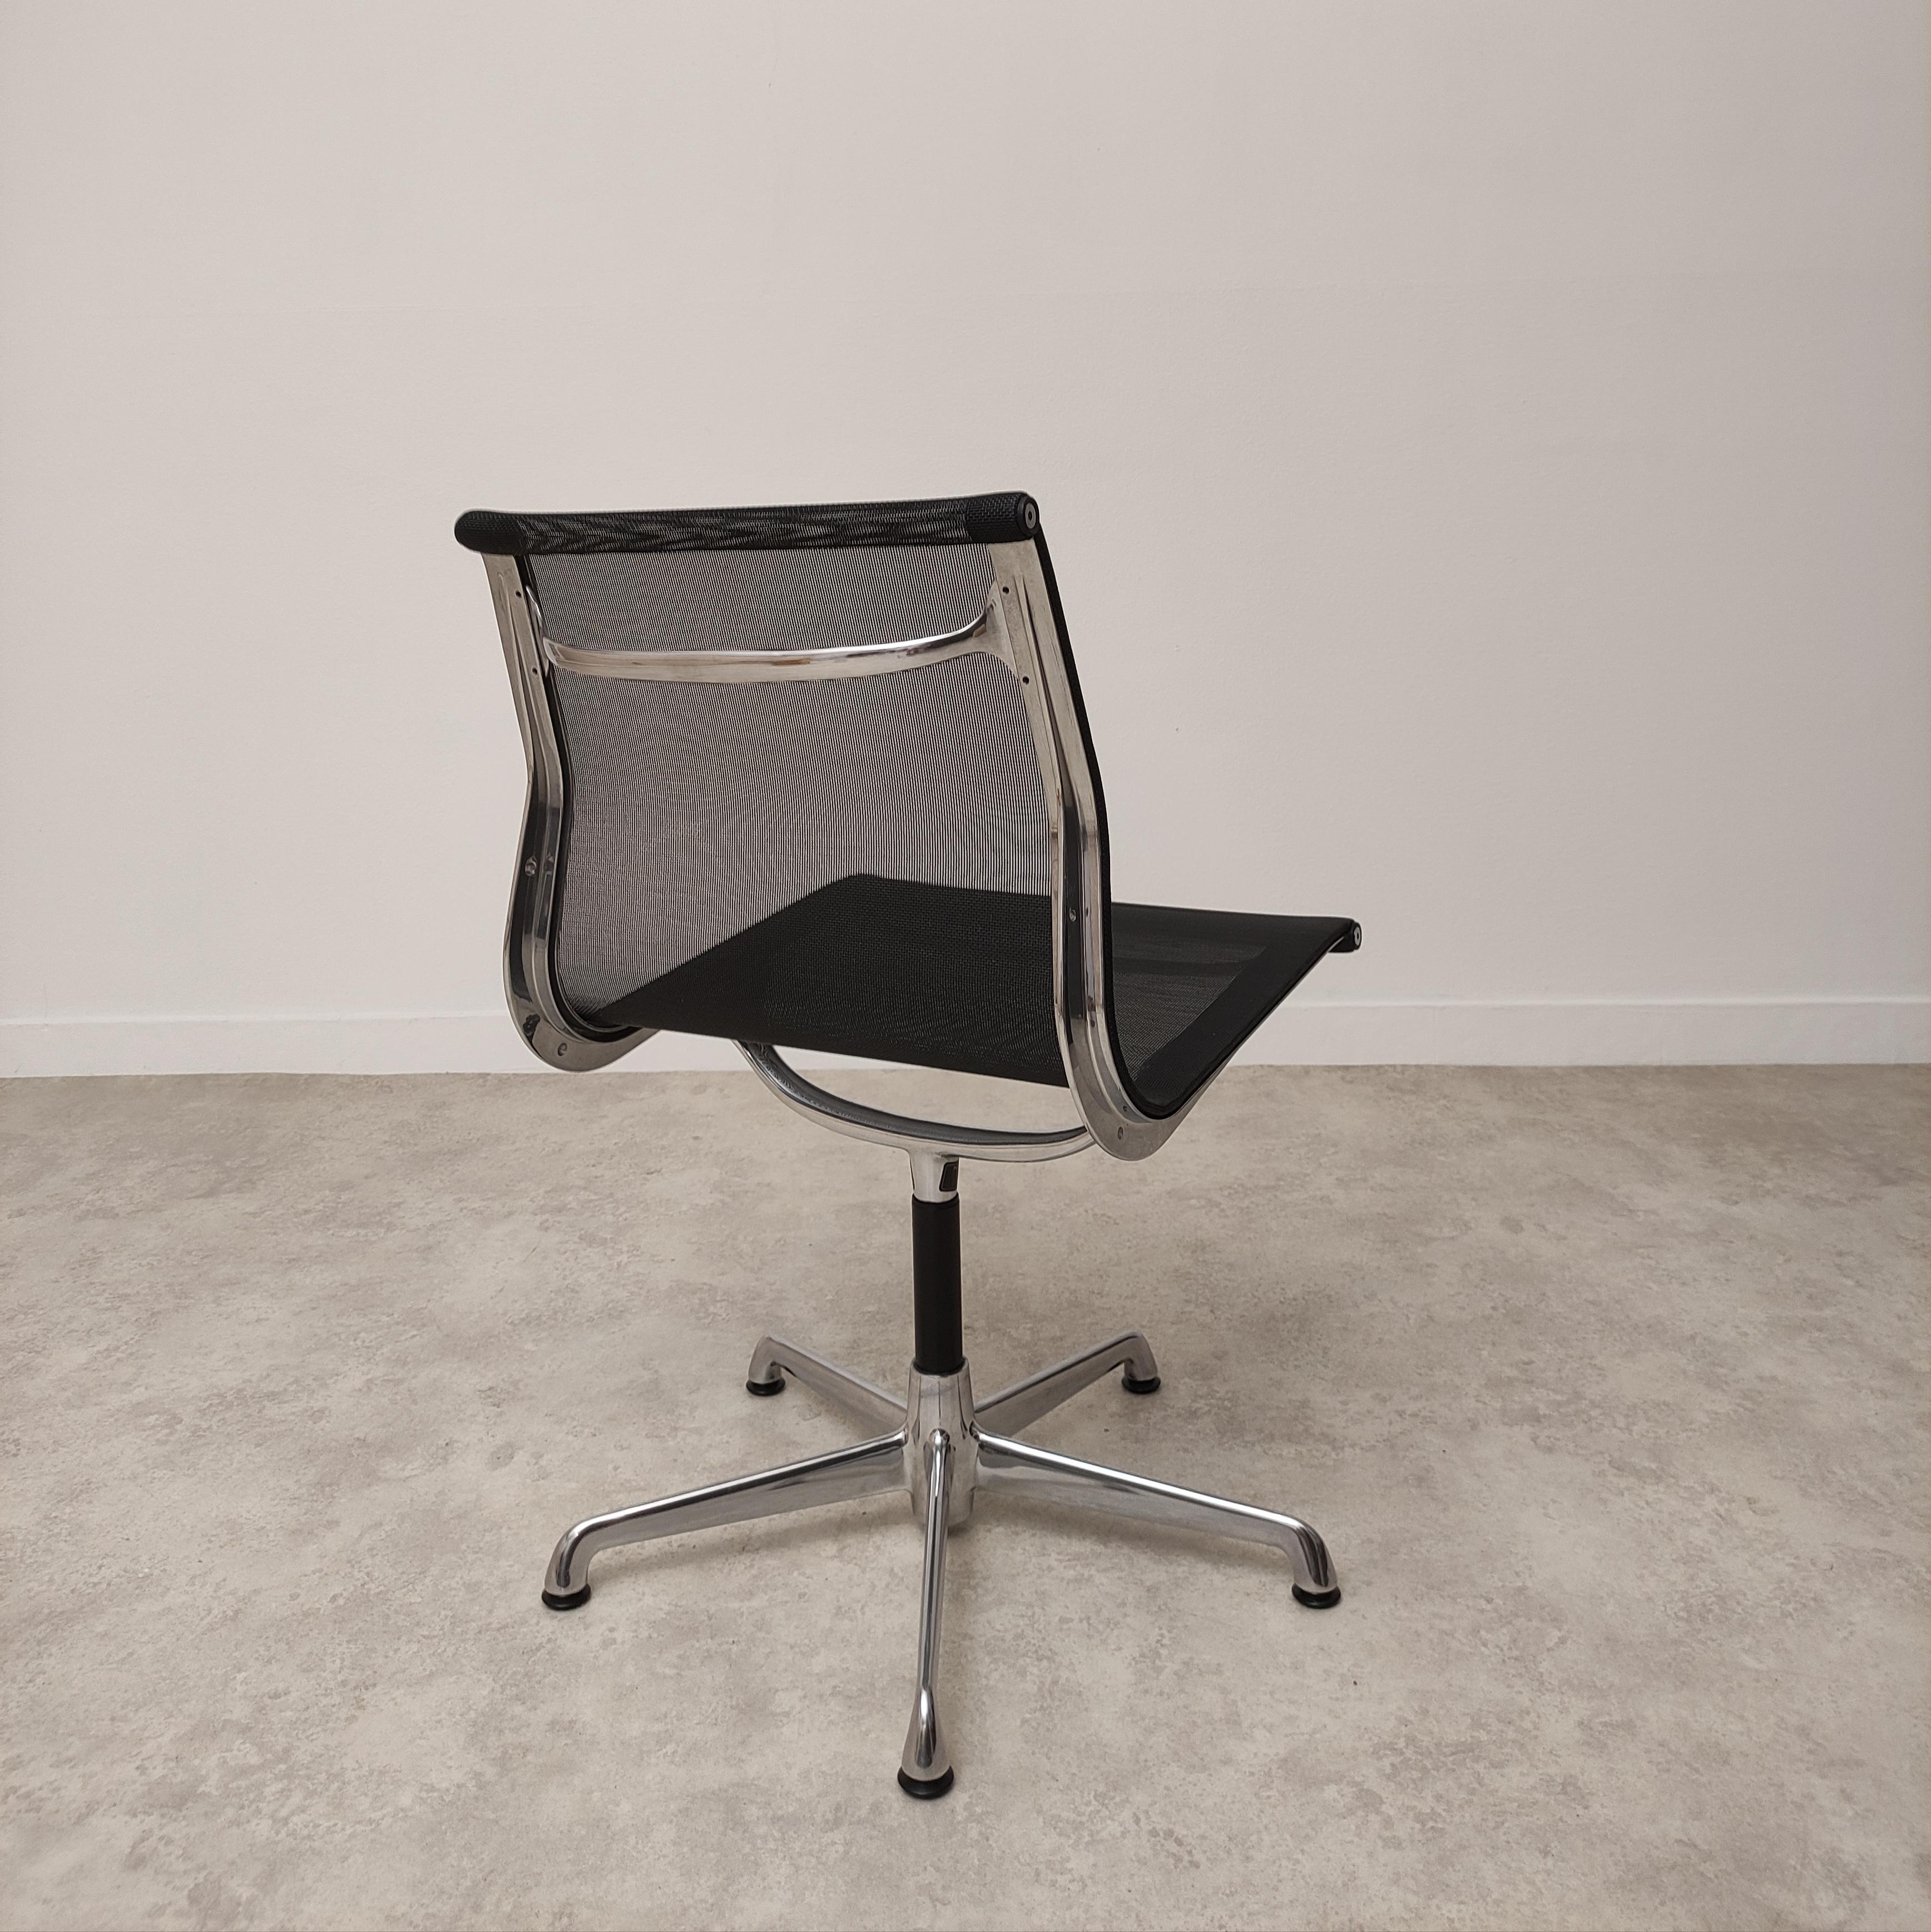 Erstaunlicher Schreibtischstuhl Ea107 von Charles Eames.
Diese frühe ICF-Produktion ist die einzige, die von der Hermann Miller Gruppe lizenziert wurde, so dass die Details perfekt sind, wie das amerikanische Modell.
Dieser Stuhl ist in perfektem